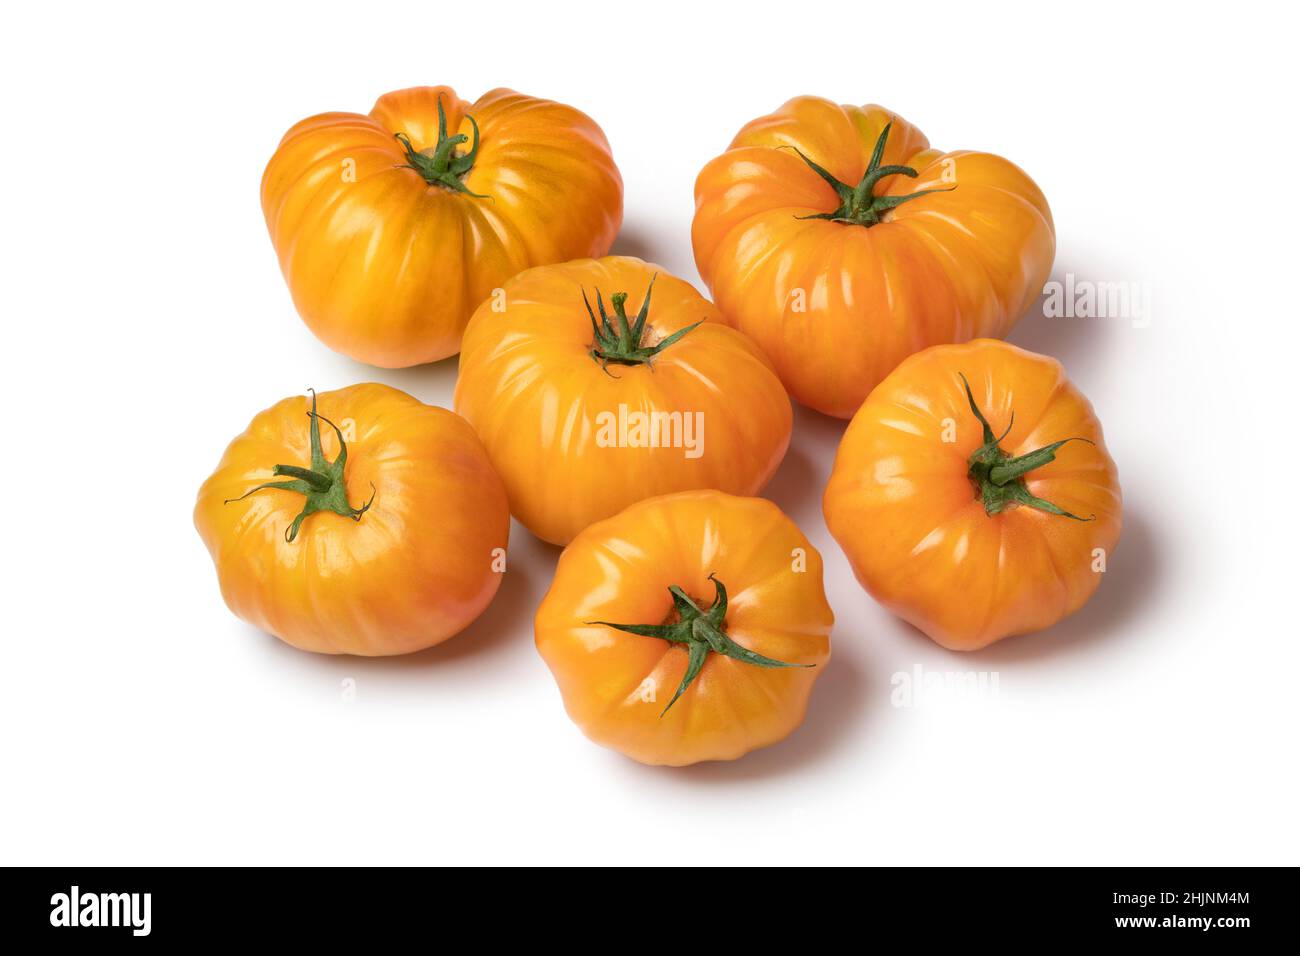 Gruppe von ganzen gelben coeur de boeuf Tomaten isoliert auf weißem Hintergrund Stockfoto